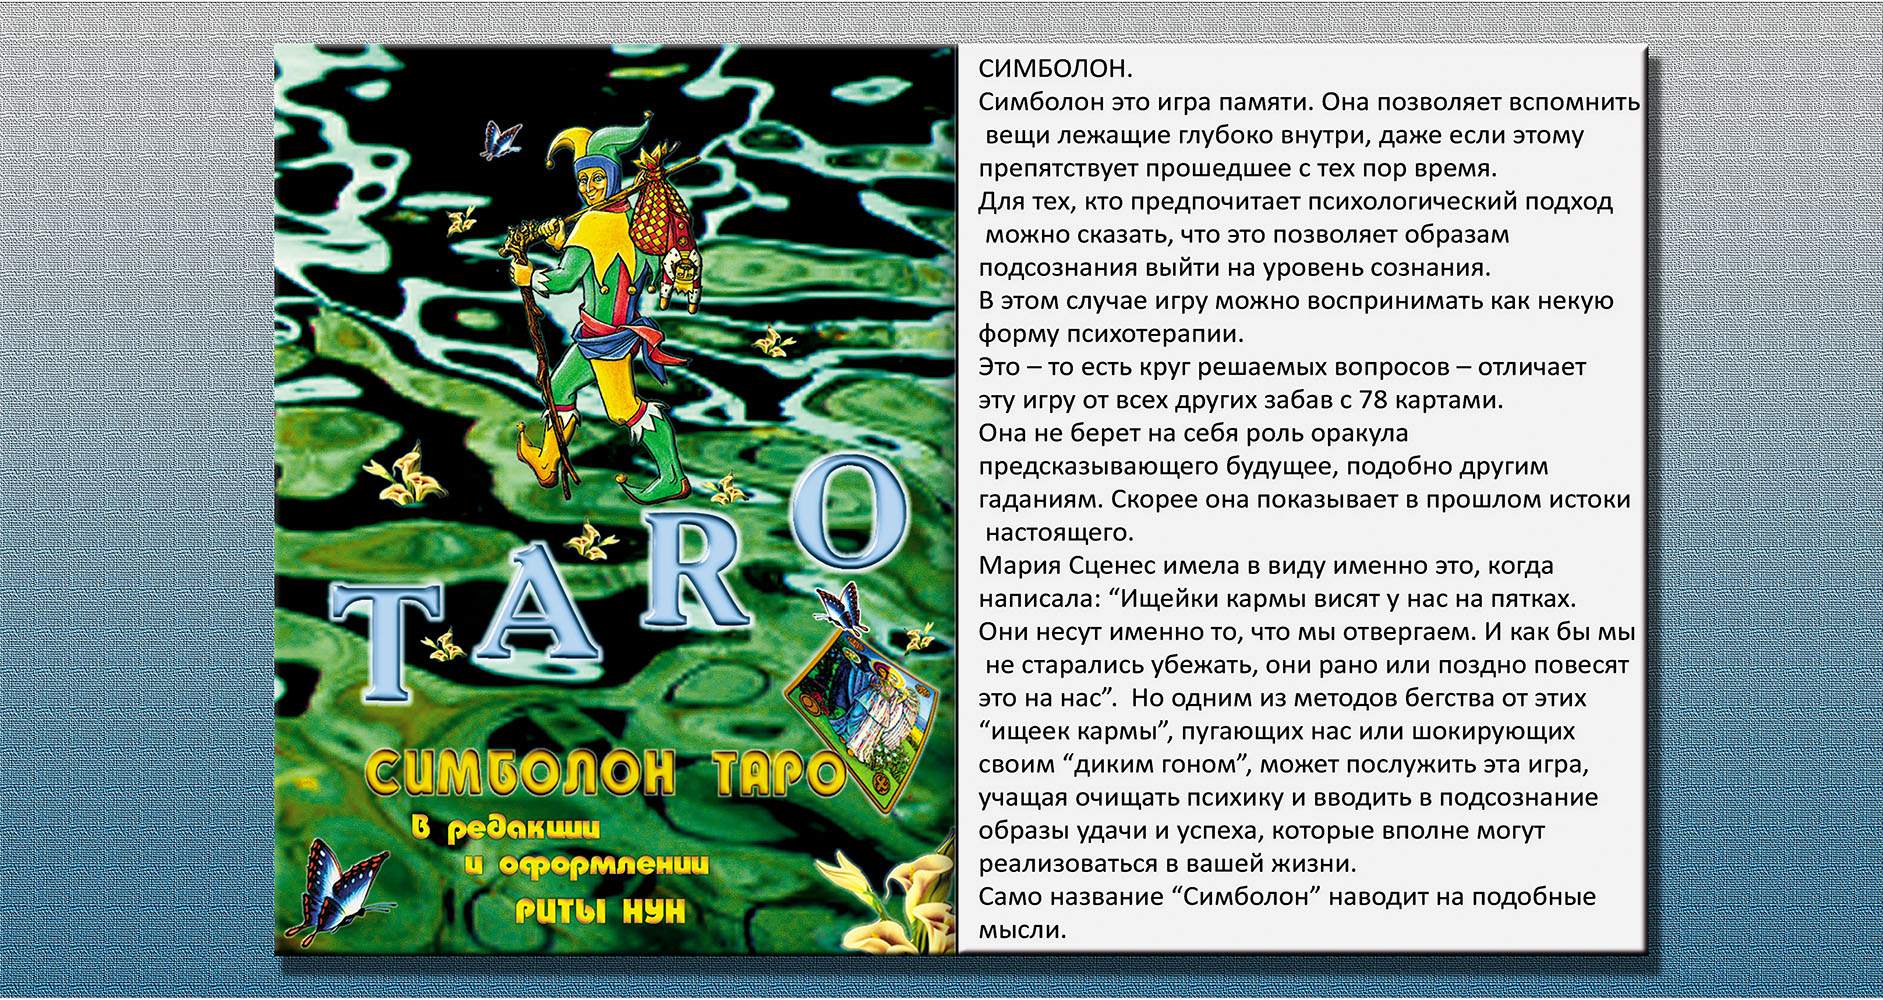 колода Symbolon (на русском языке) - авторская работа Риты Нун